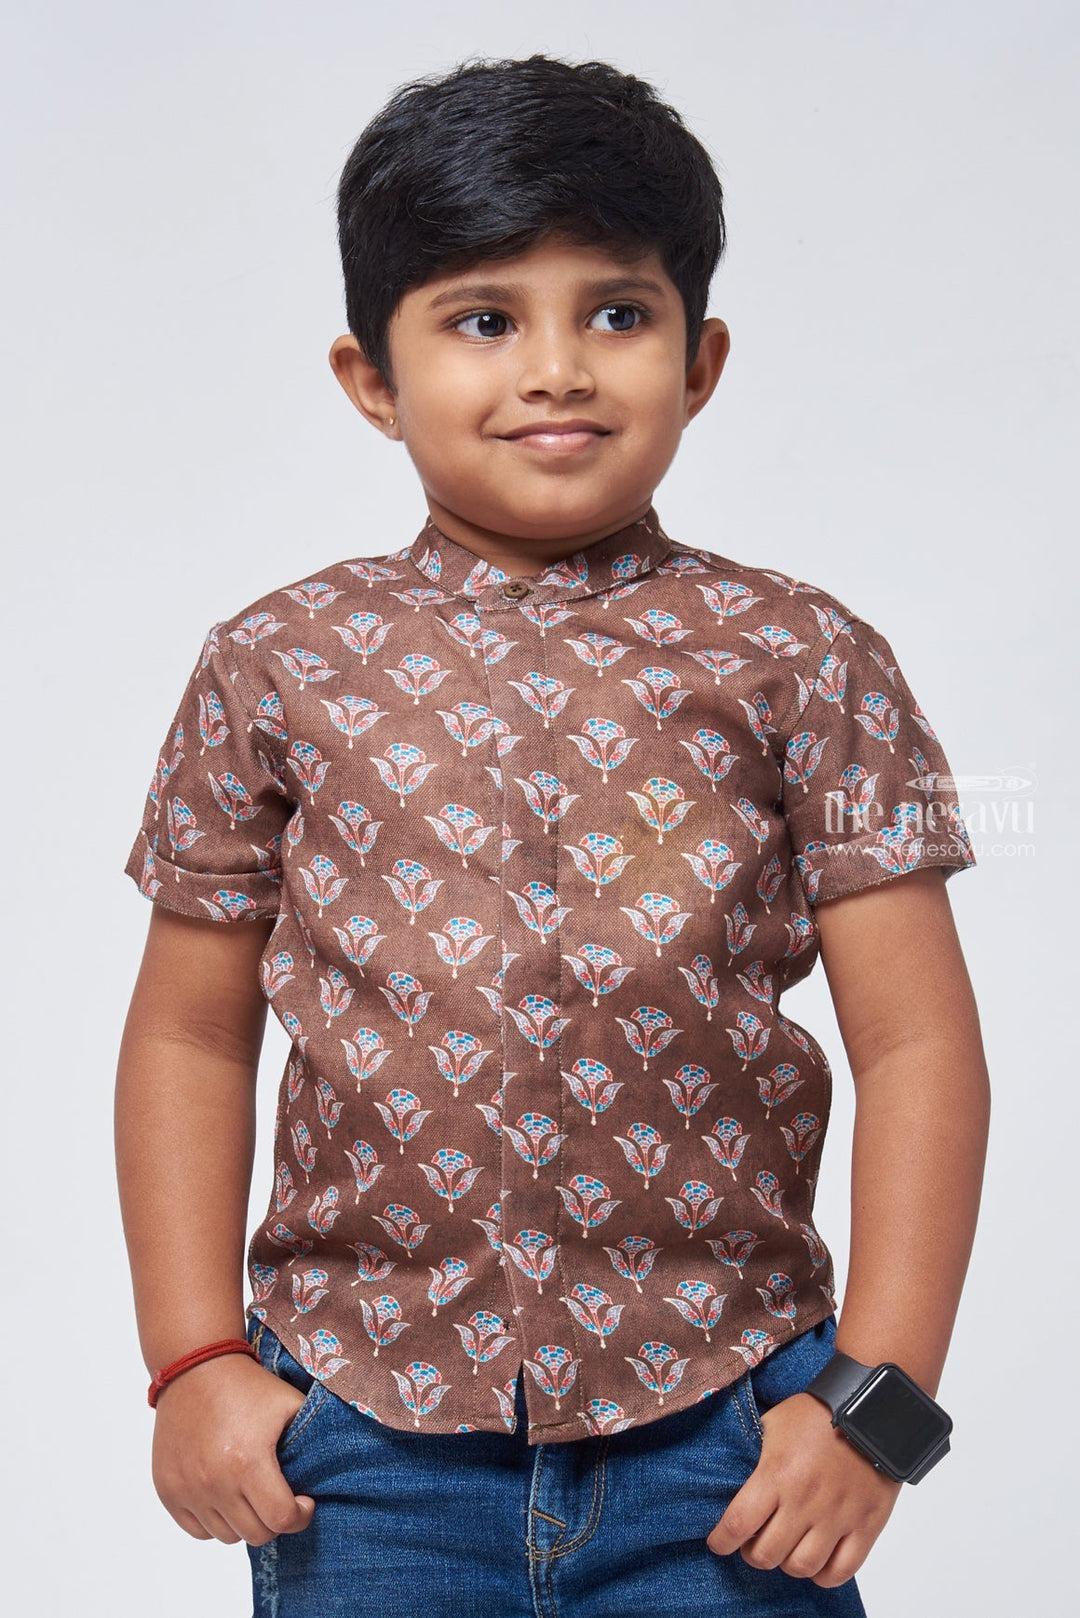 The Nesavu Boys Linen Shirt Floral Elegance: Linen Boys' Shirt with Nature-Inspired Print for a Sophisticated Touch Nesavu 14 (6M) / Brown / Linen BS056-14 Nature Inspired Printed Shirt | Casual Shirt for Boys | The Nesavu